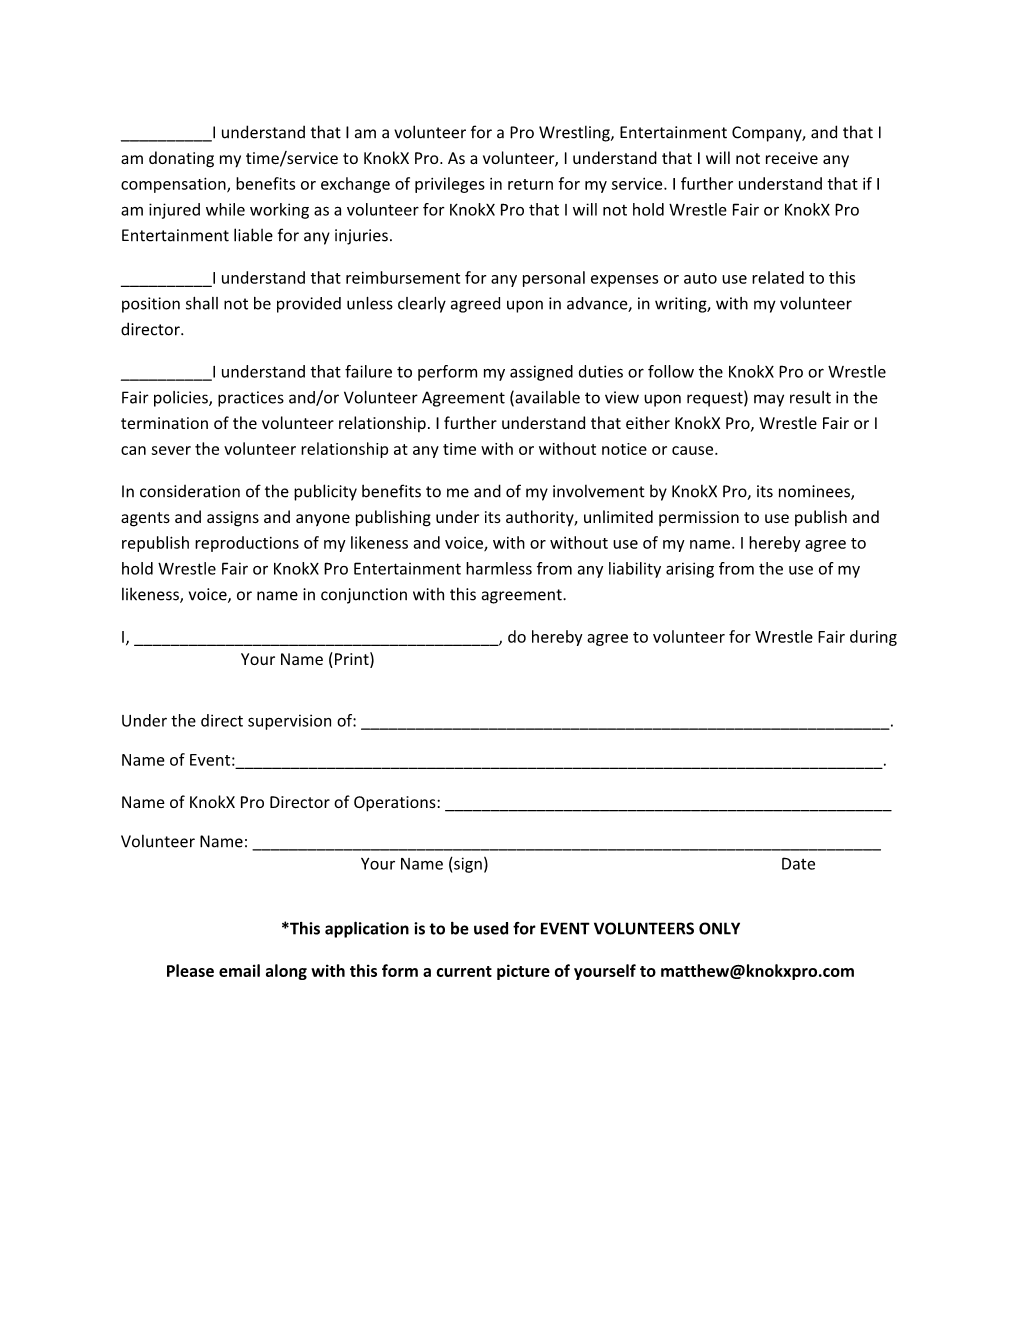 Special Event Volunteer Agreement